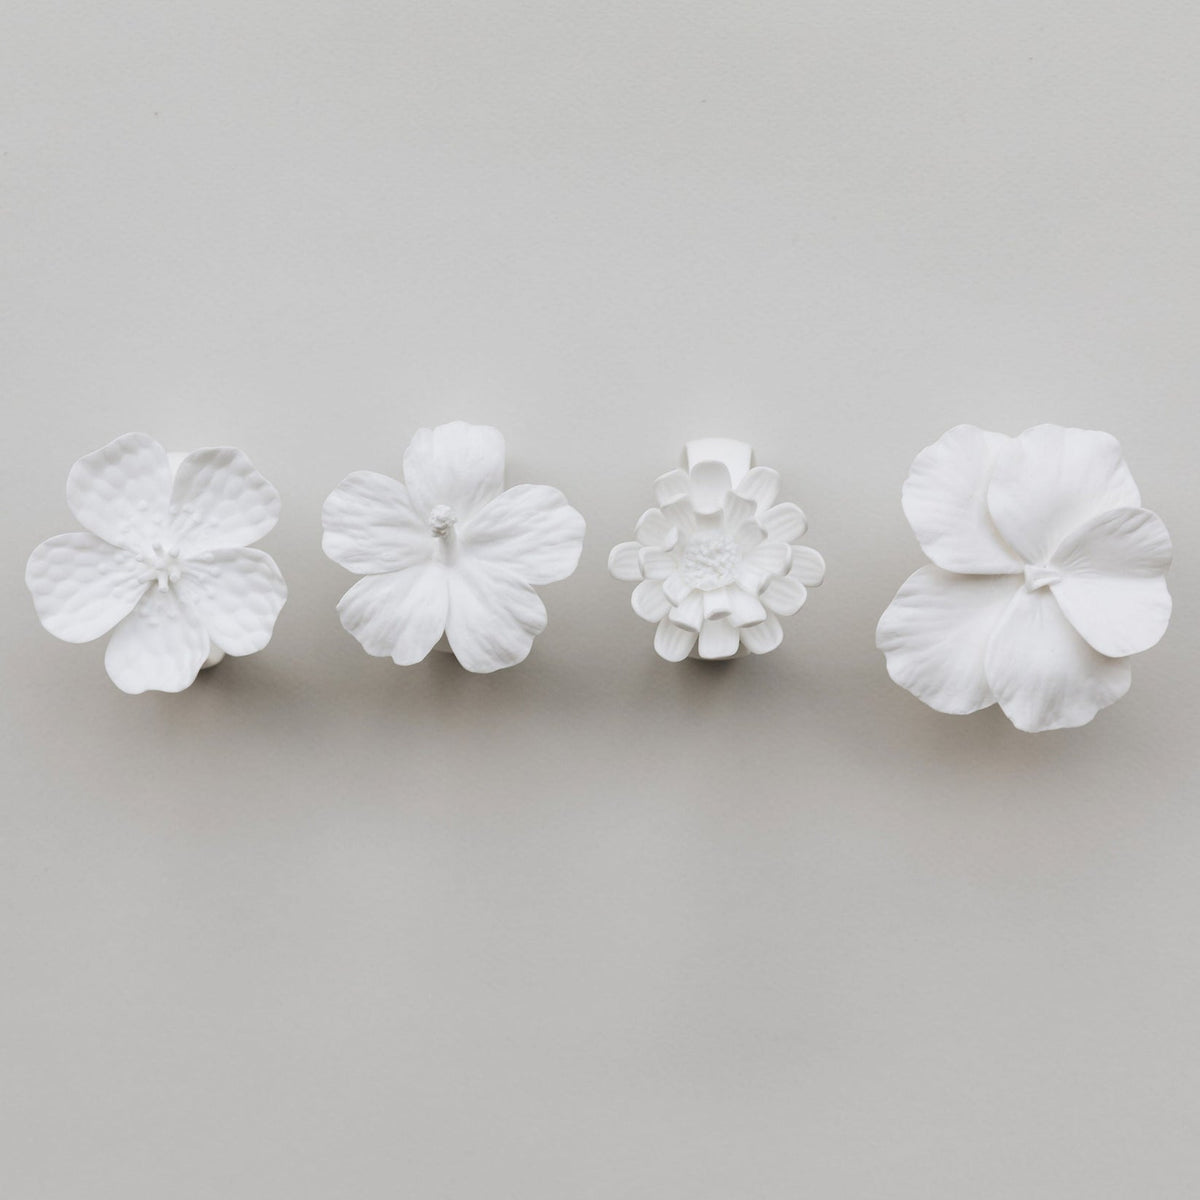 Assorted Flower Napkin Rings, Set of 4